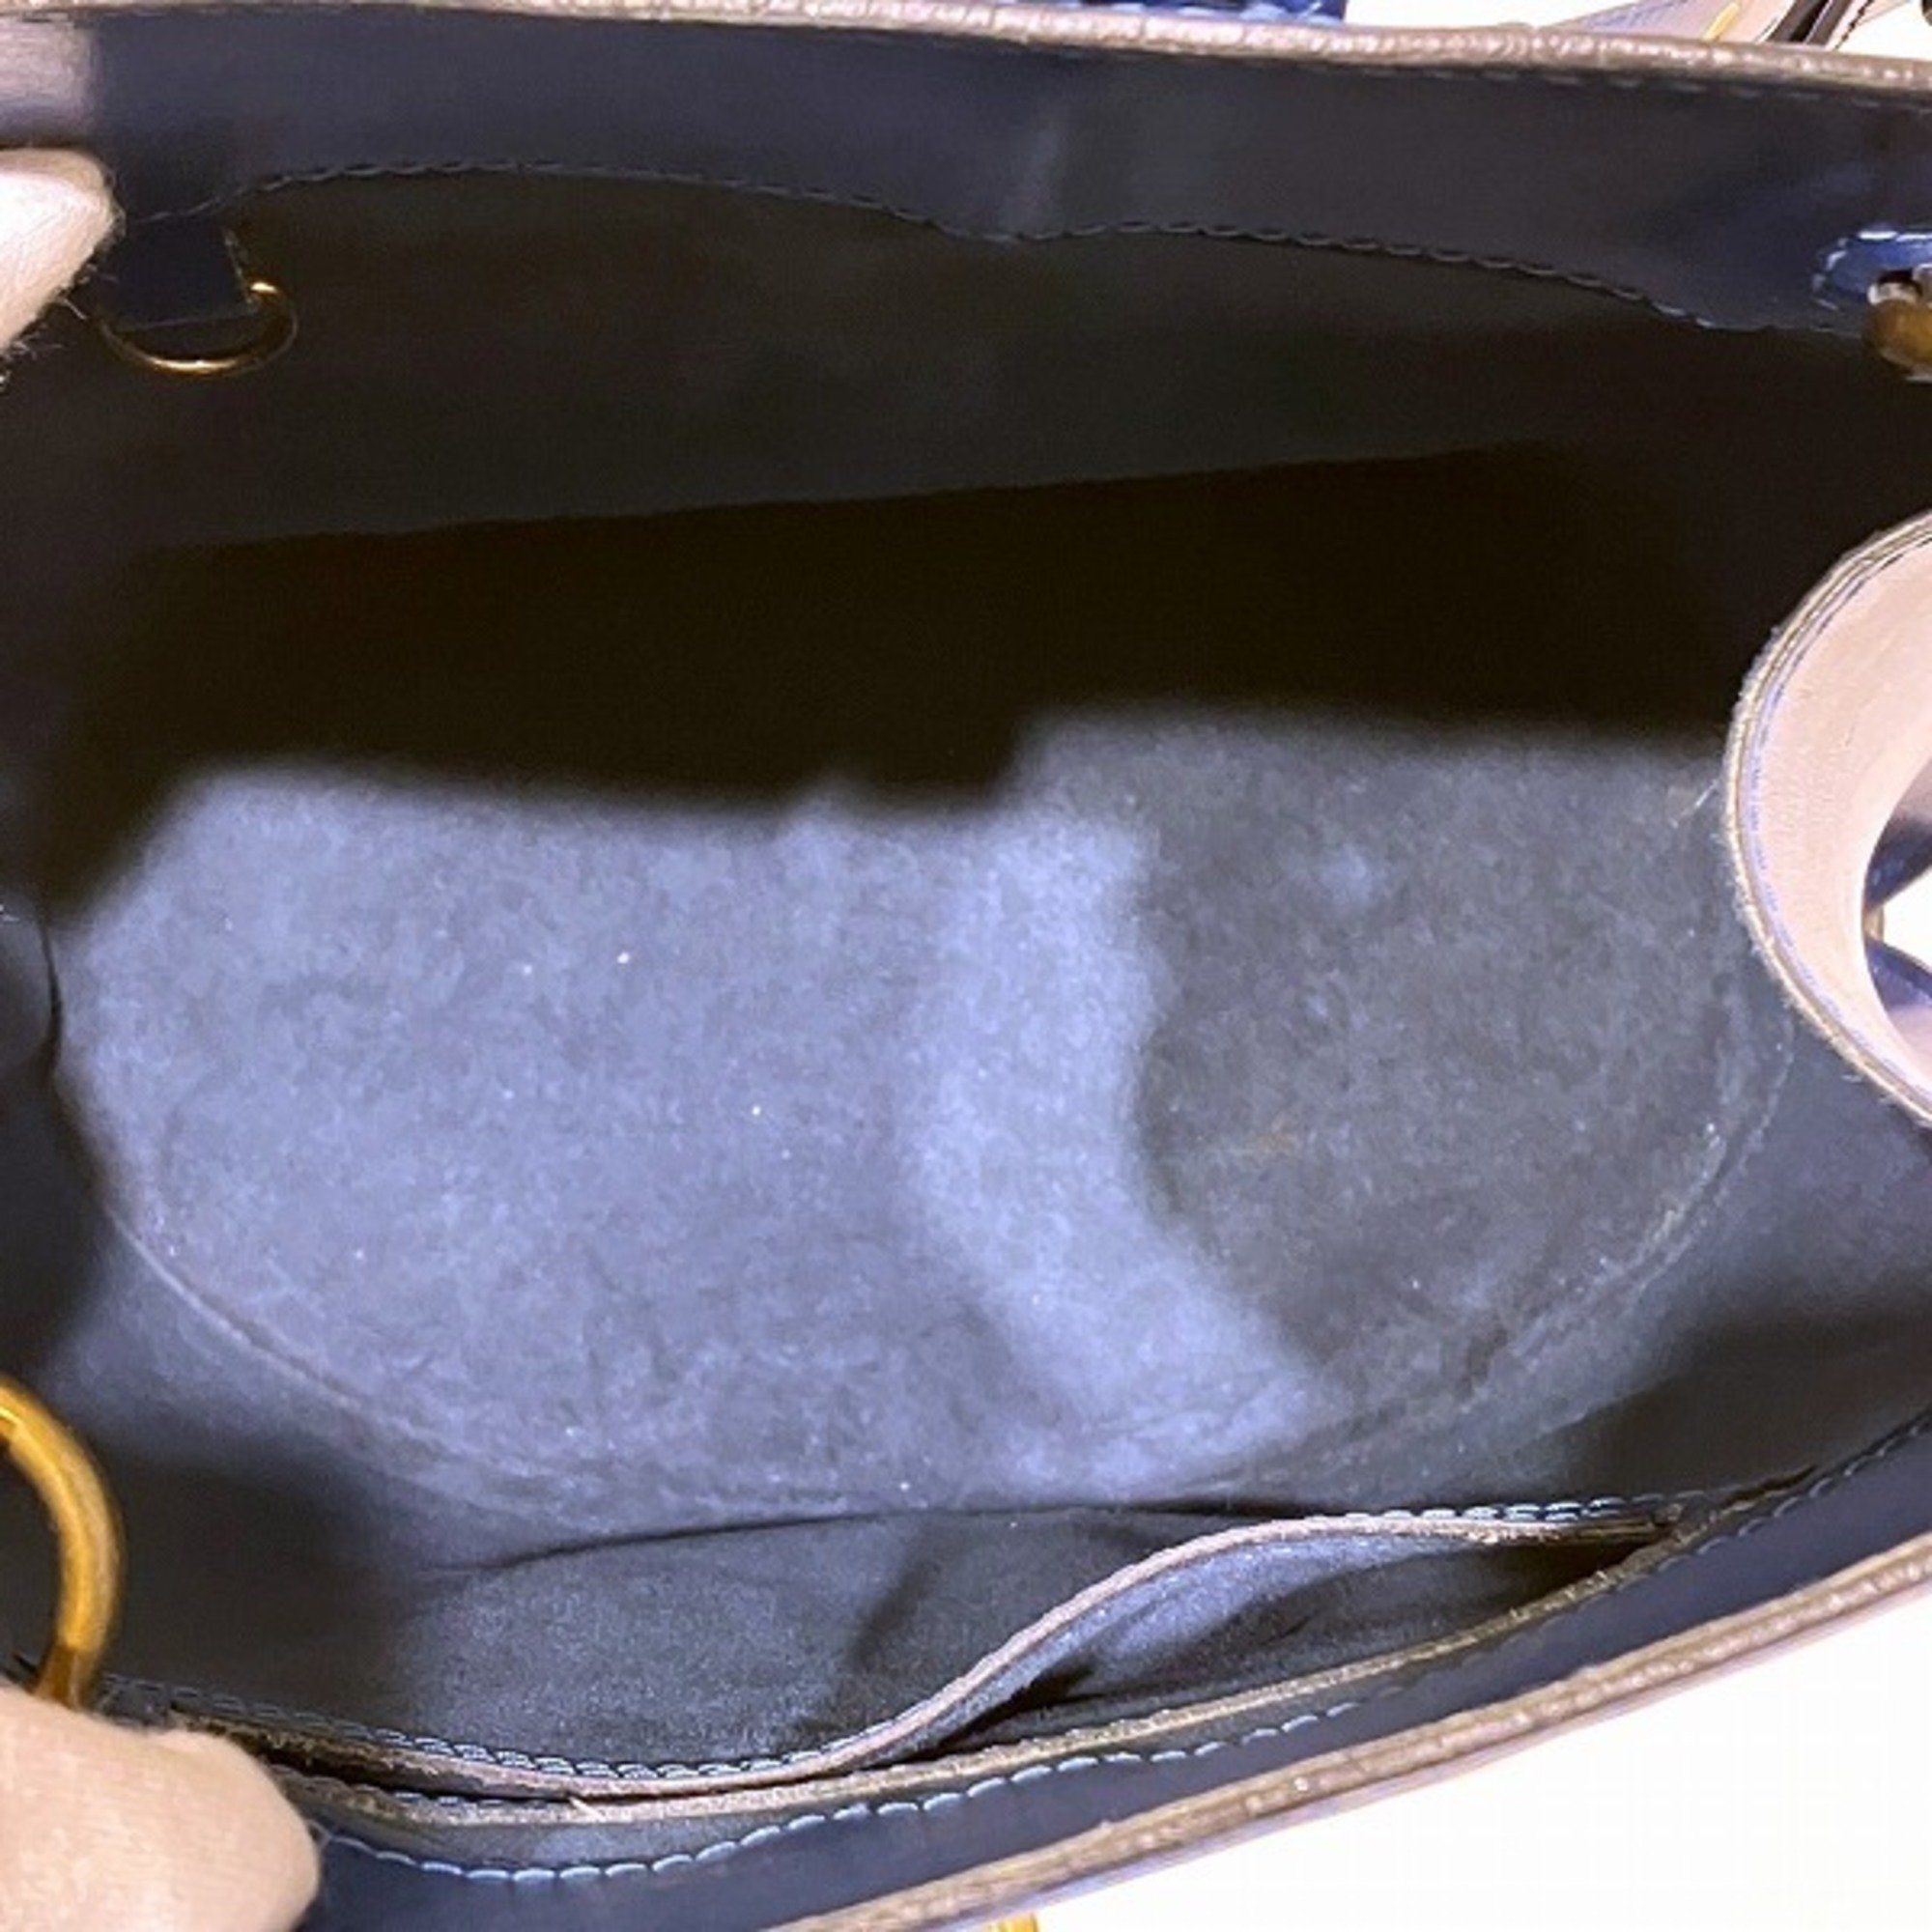 Louis Vuitton Epi Cluny M52255 Bag Shoulder Women's